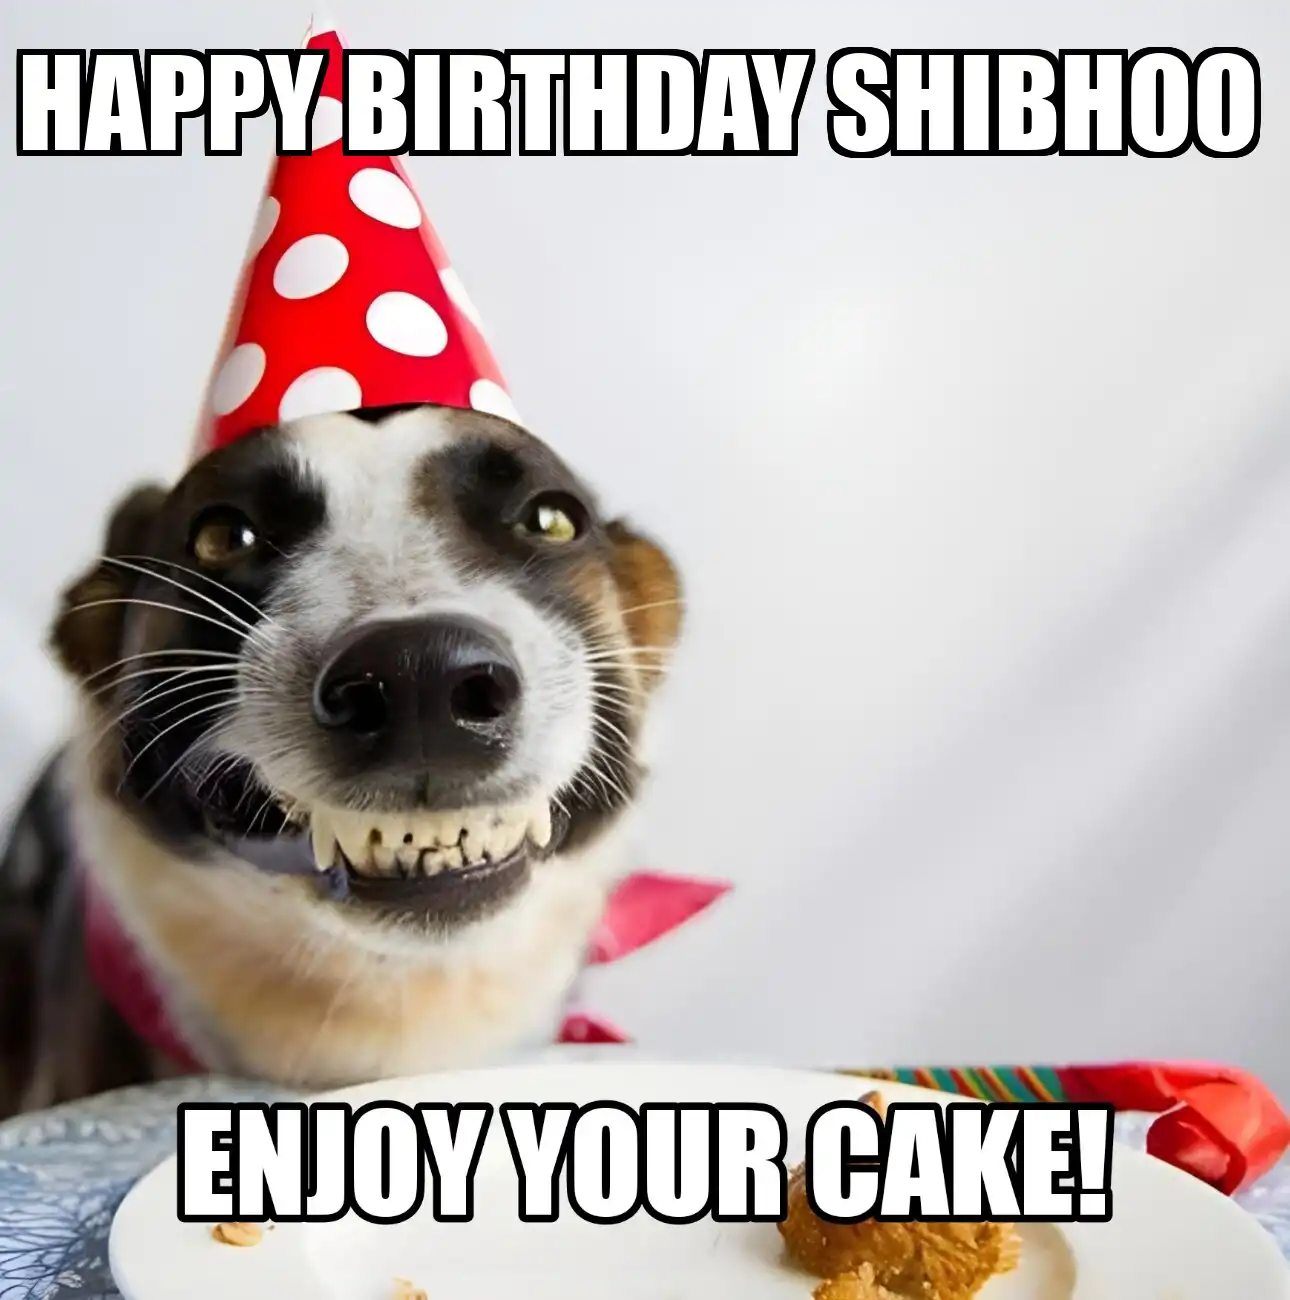 Happy Birthday Shibhoo Enjoy Your Cake Dog Meme